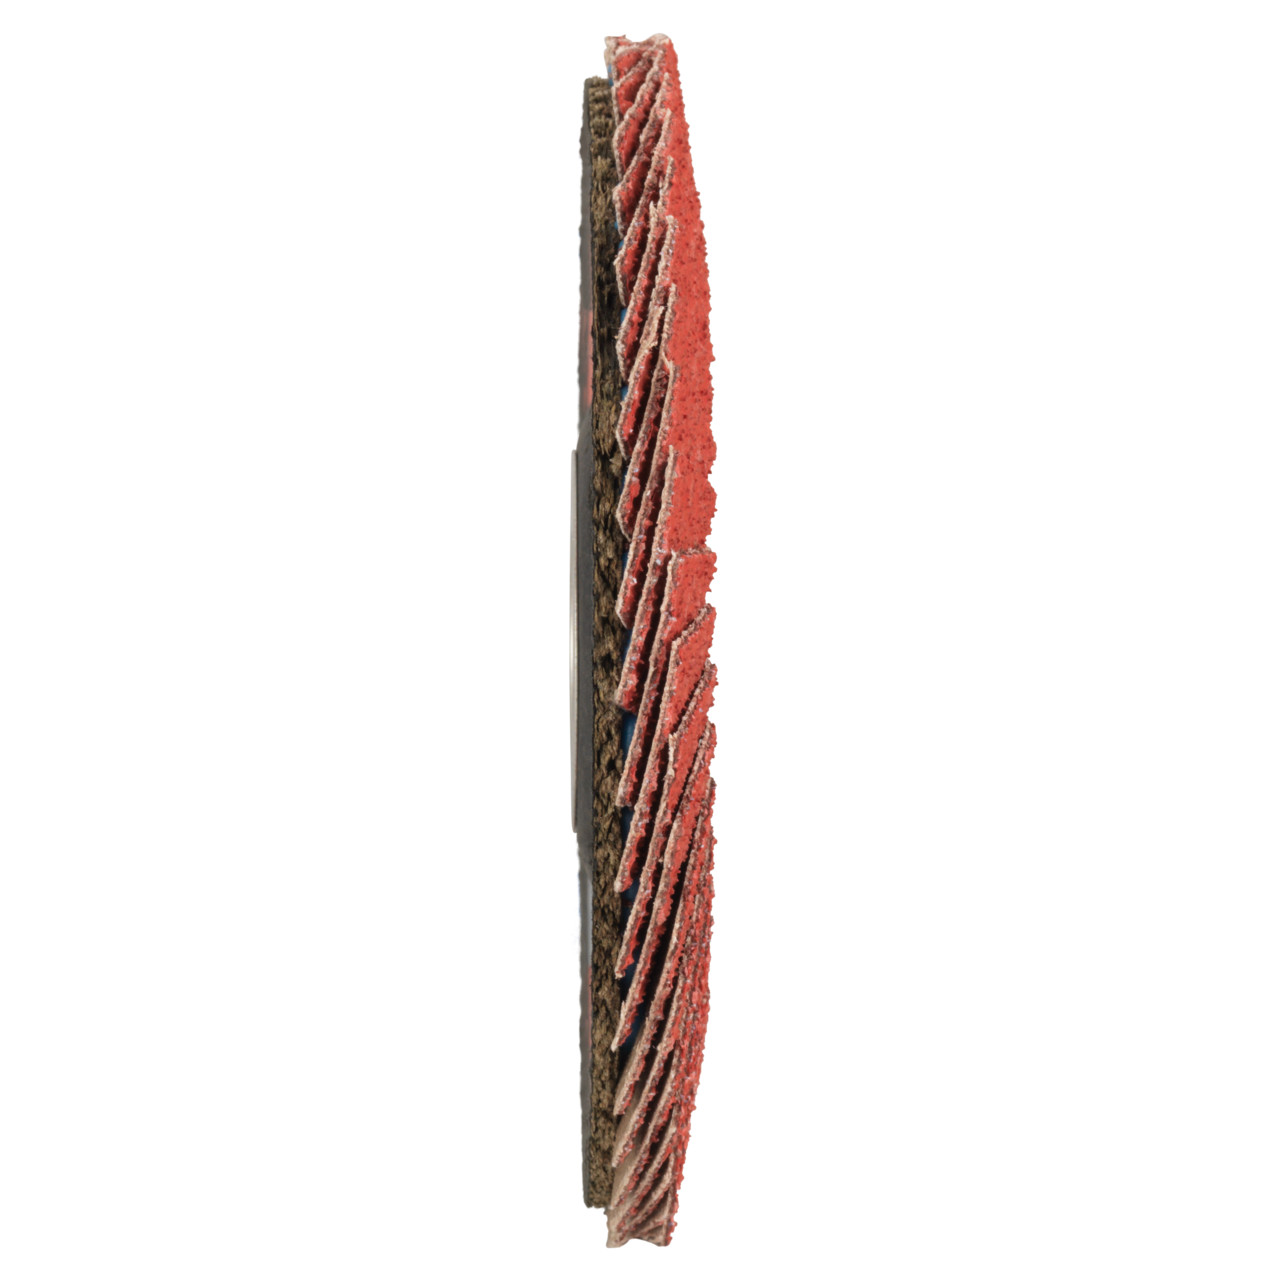 Rondella dentata Tyrolit DxH 178x22.23 CERAMICA per acciaio inox, P60, forma: 27A - design a gomito (corpo portante in fibra di vetro), Art. 34166685